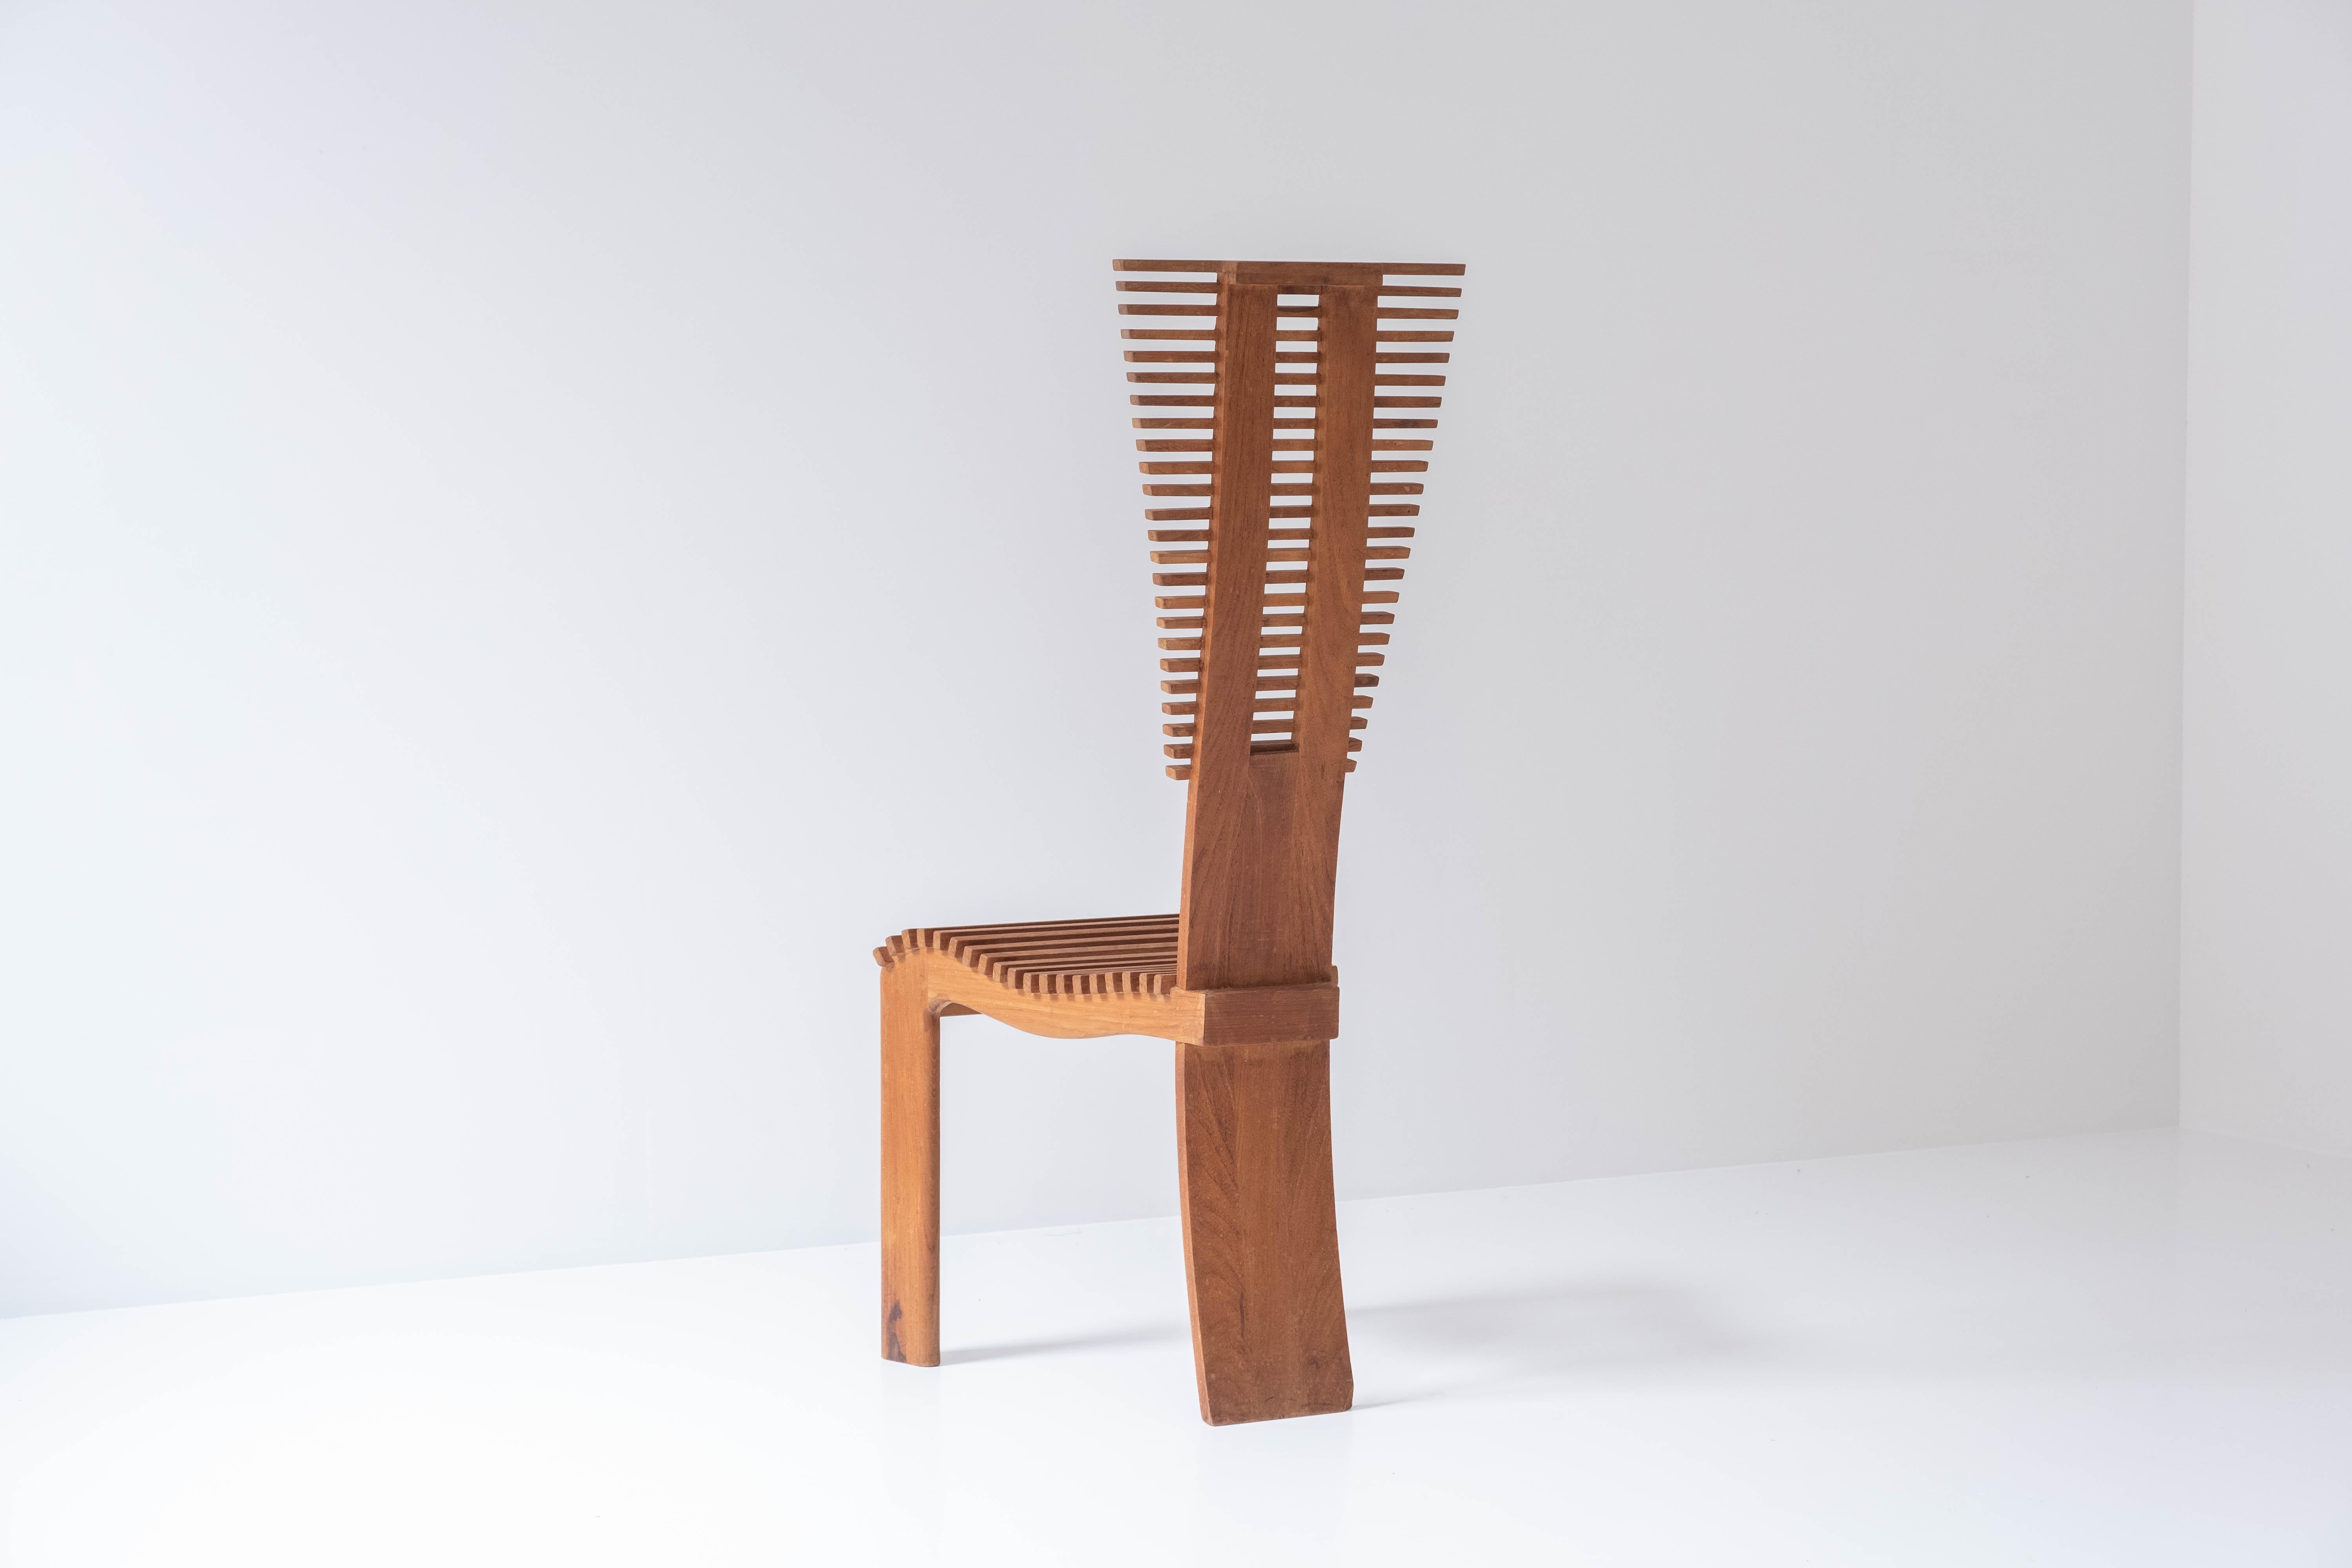 Wunderschönes Set aus vier Hochlehner-Esszimmerstühlen aus den 1960er Jahren. Diese skulpturalen Stühle sind aus Teakholz gefertigt. Die Silhouette und der Rhythmus der Linien machen es zu einem sehr interessanten und ästhetischen Set. Einige